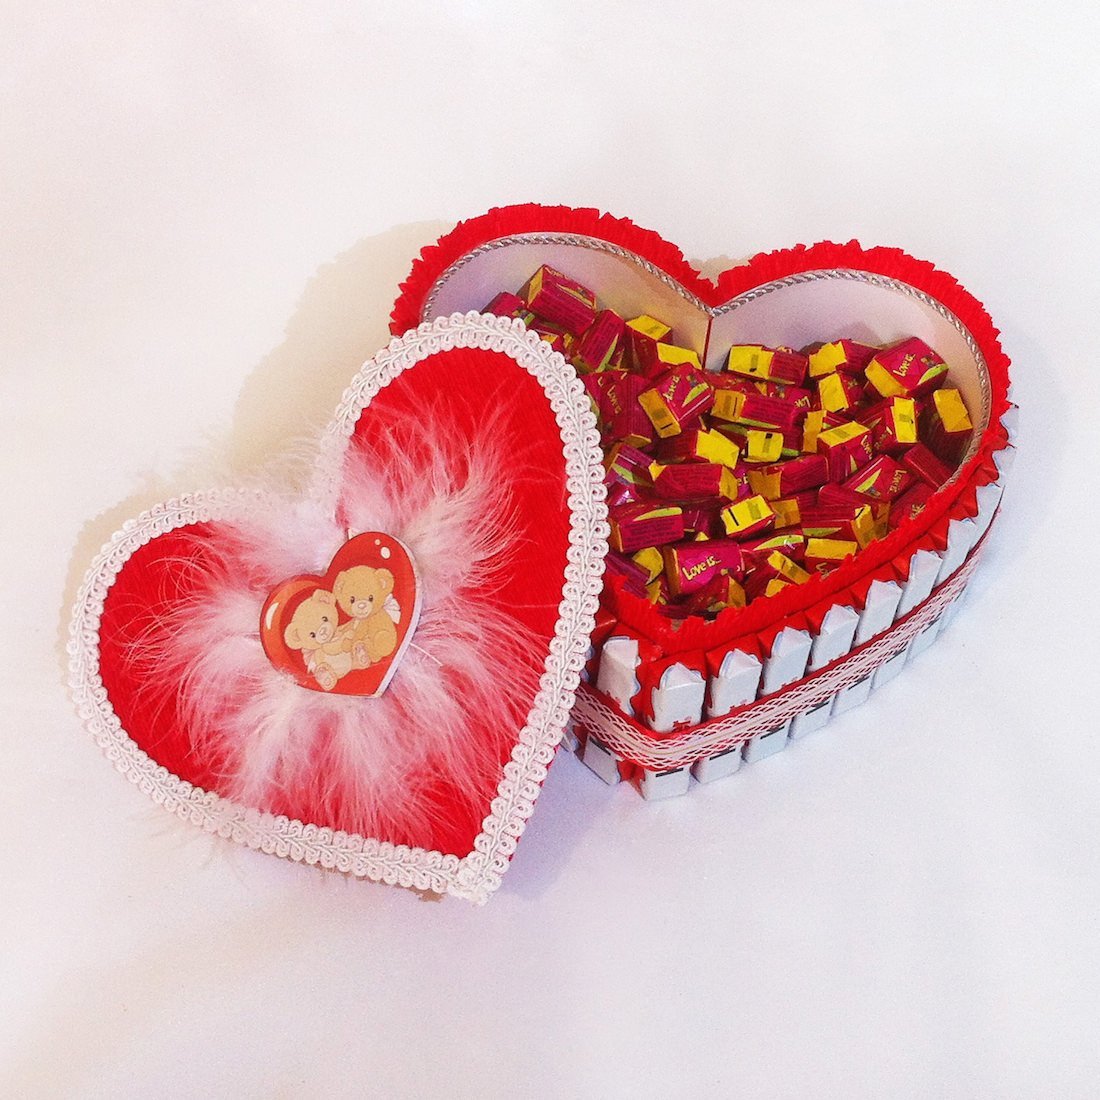 Сердце сладостью. Сердце из конфет. Сердечко из конфет. Красивые подарки из конфет. Сладкие подарки на день влюбленных.